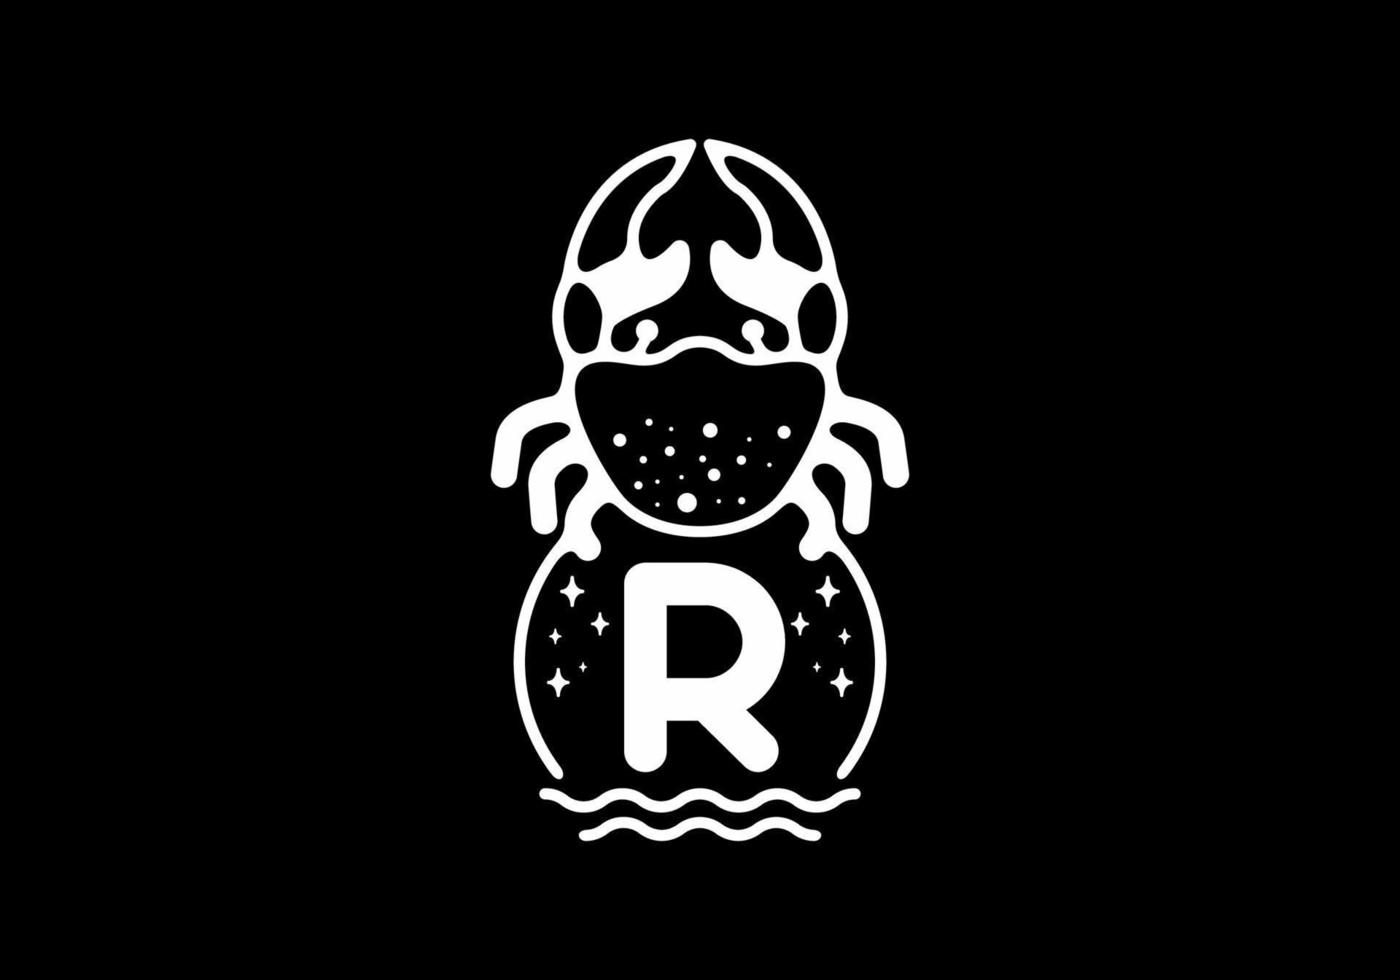 weiße schwarze krabbenstrichgrafik mit r-anfangsbuchstaben vektor